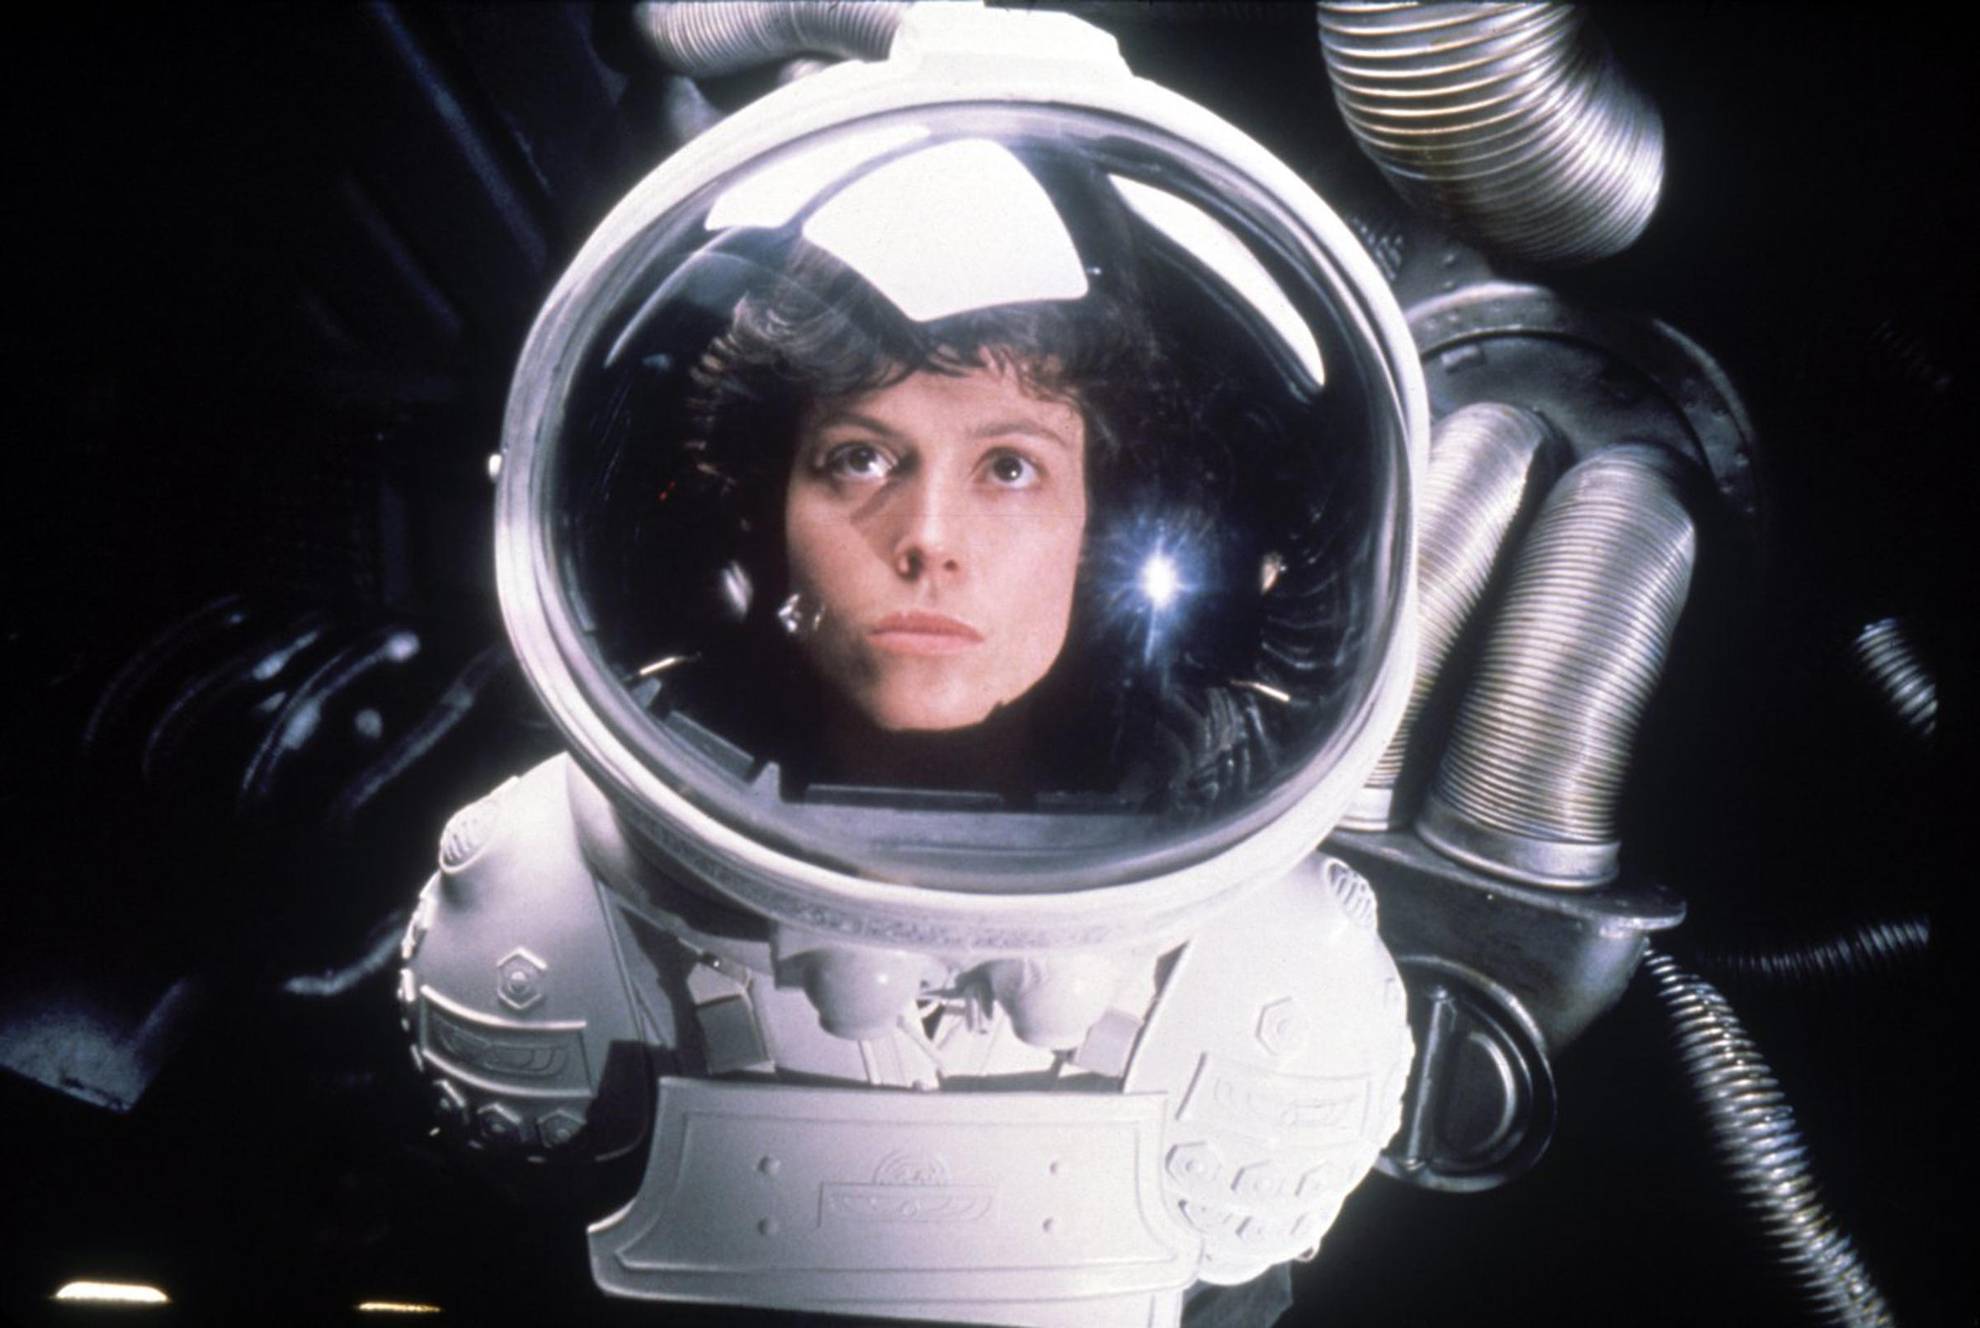 Sigourney Weaver as Ripley in Alien